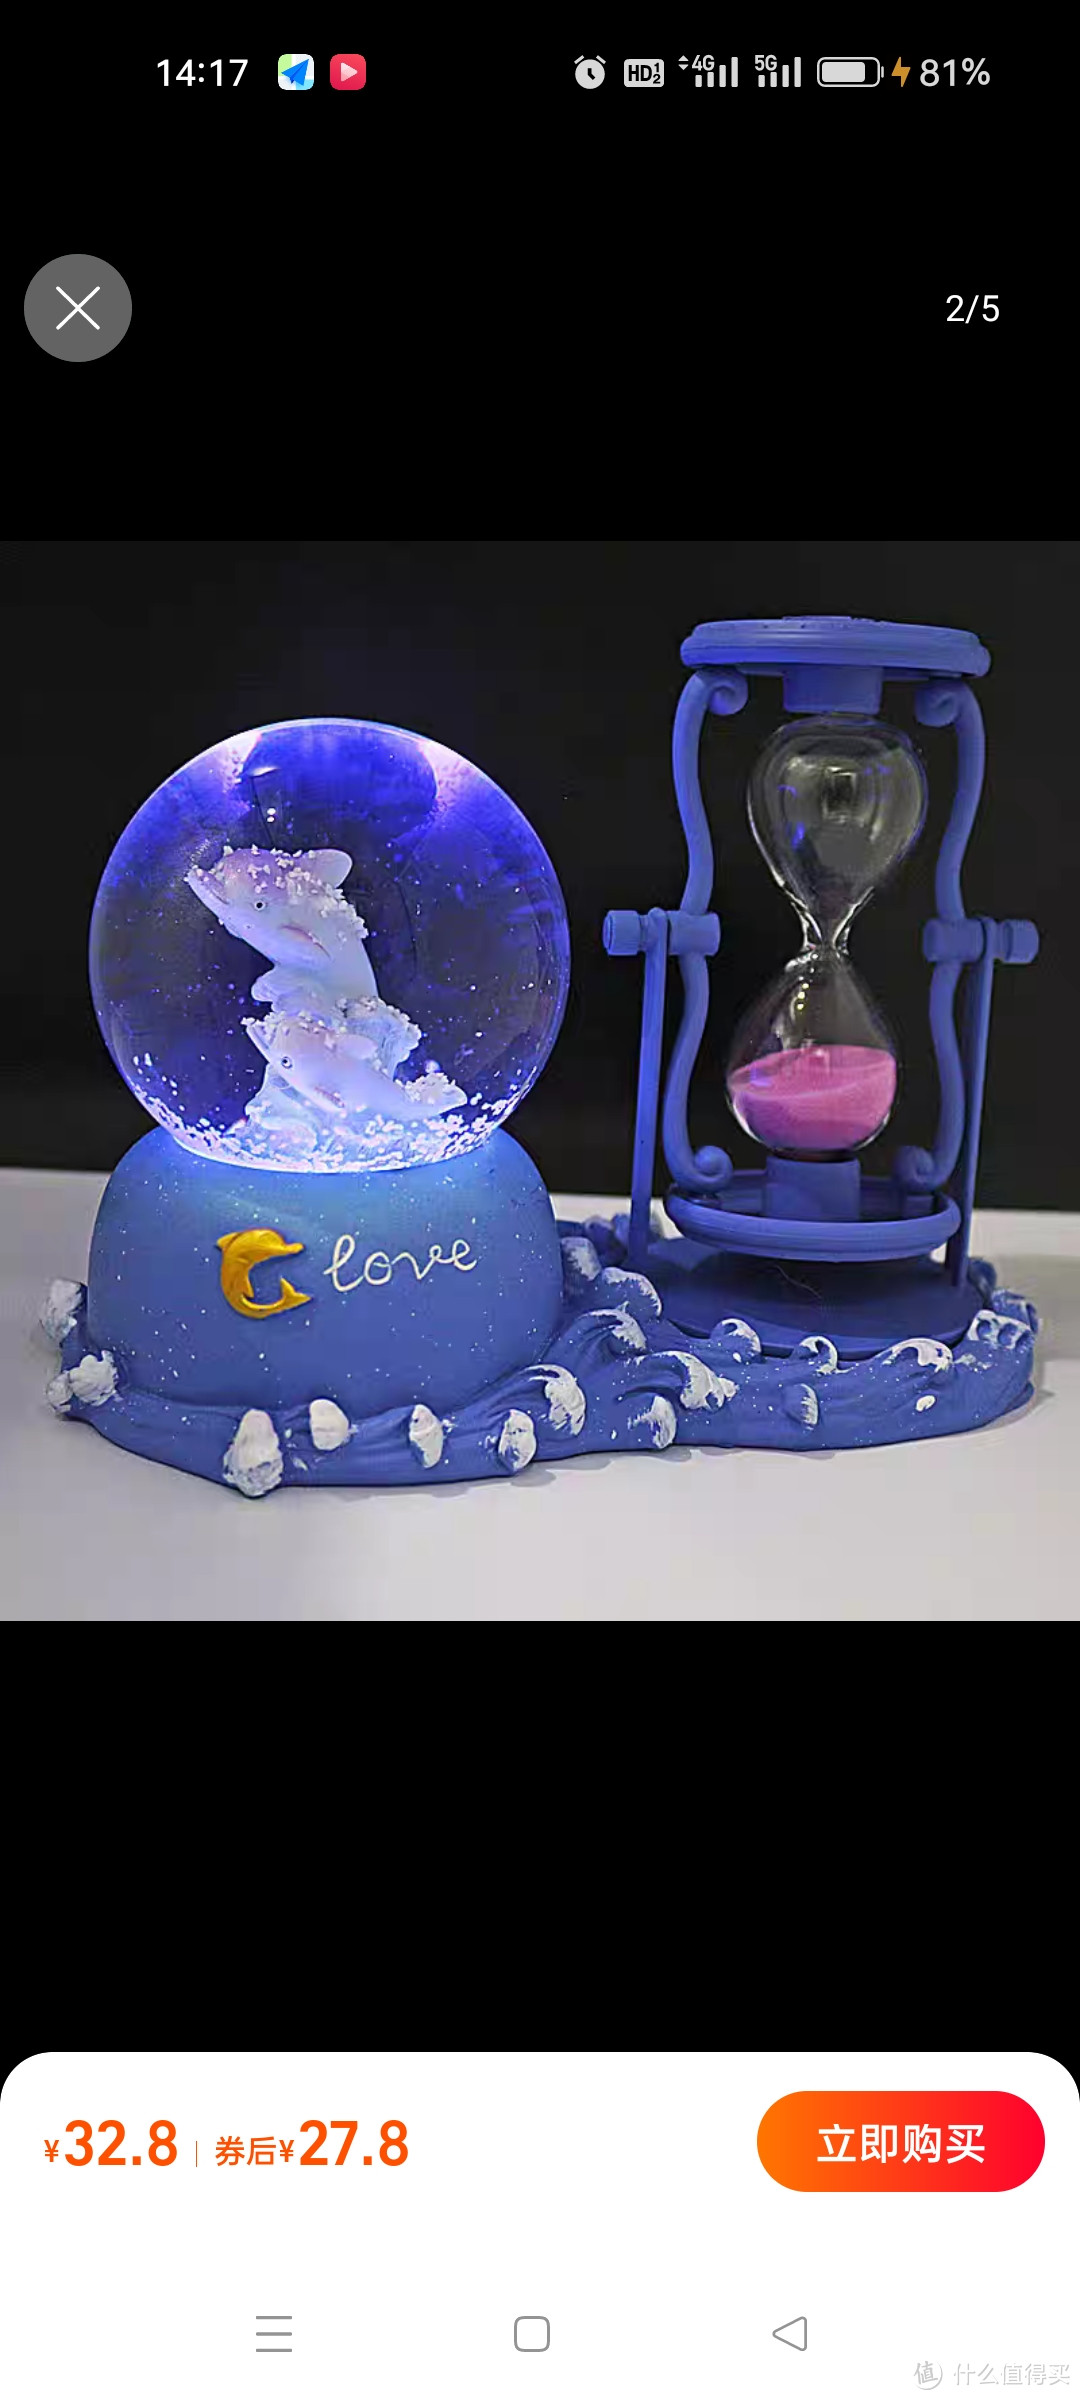 30秒时间沙漏水晶球发光摆件圣诞节礼品计时器同学生日礼物女孩子